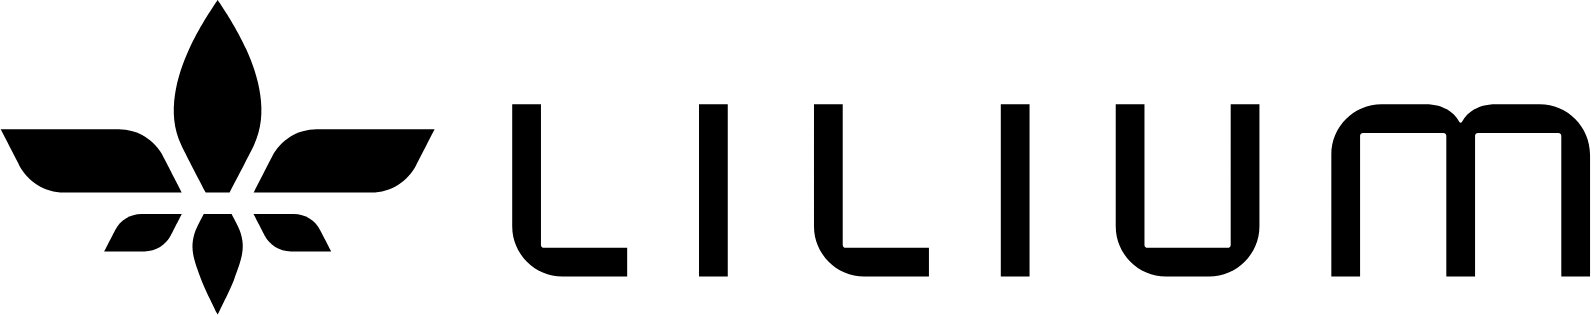 Lilium logo large (transparent PNG)